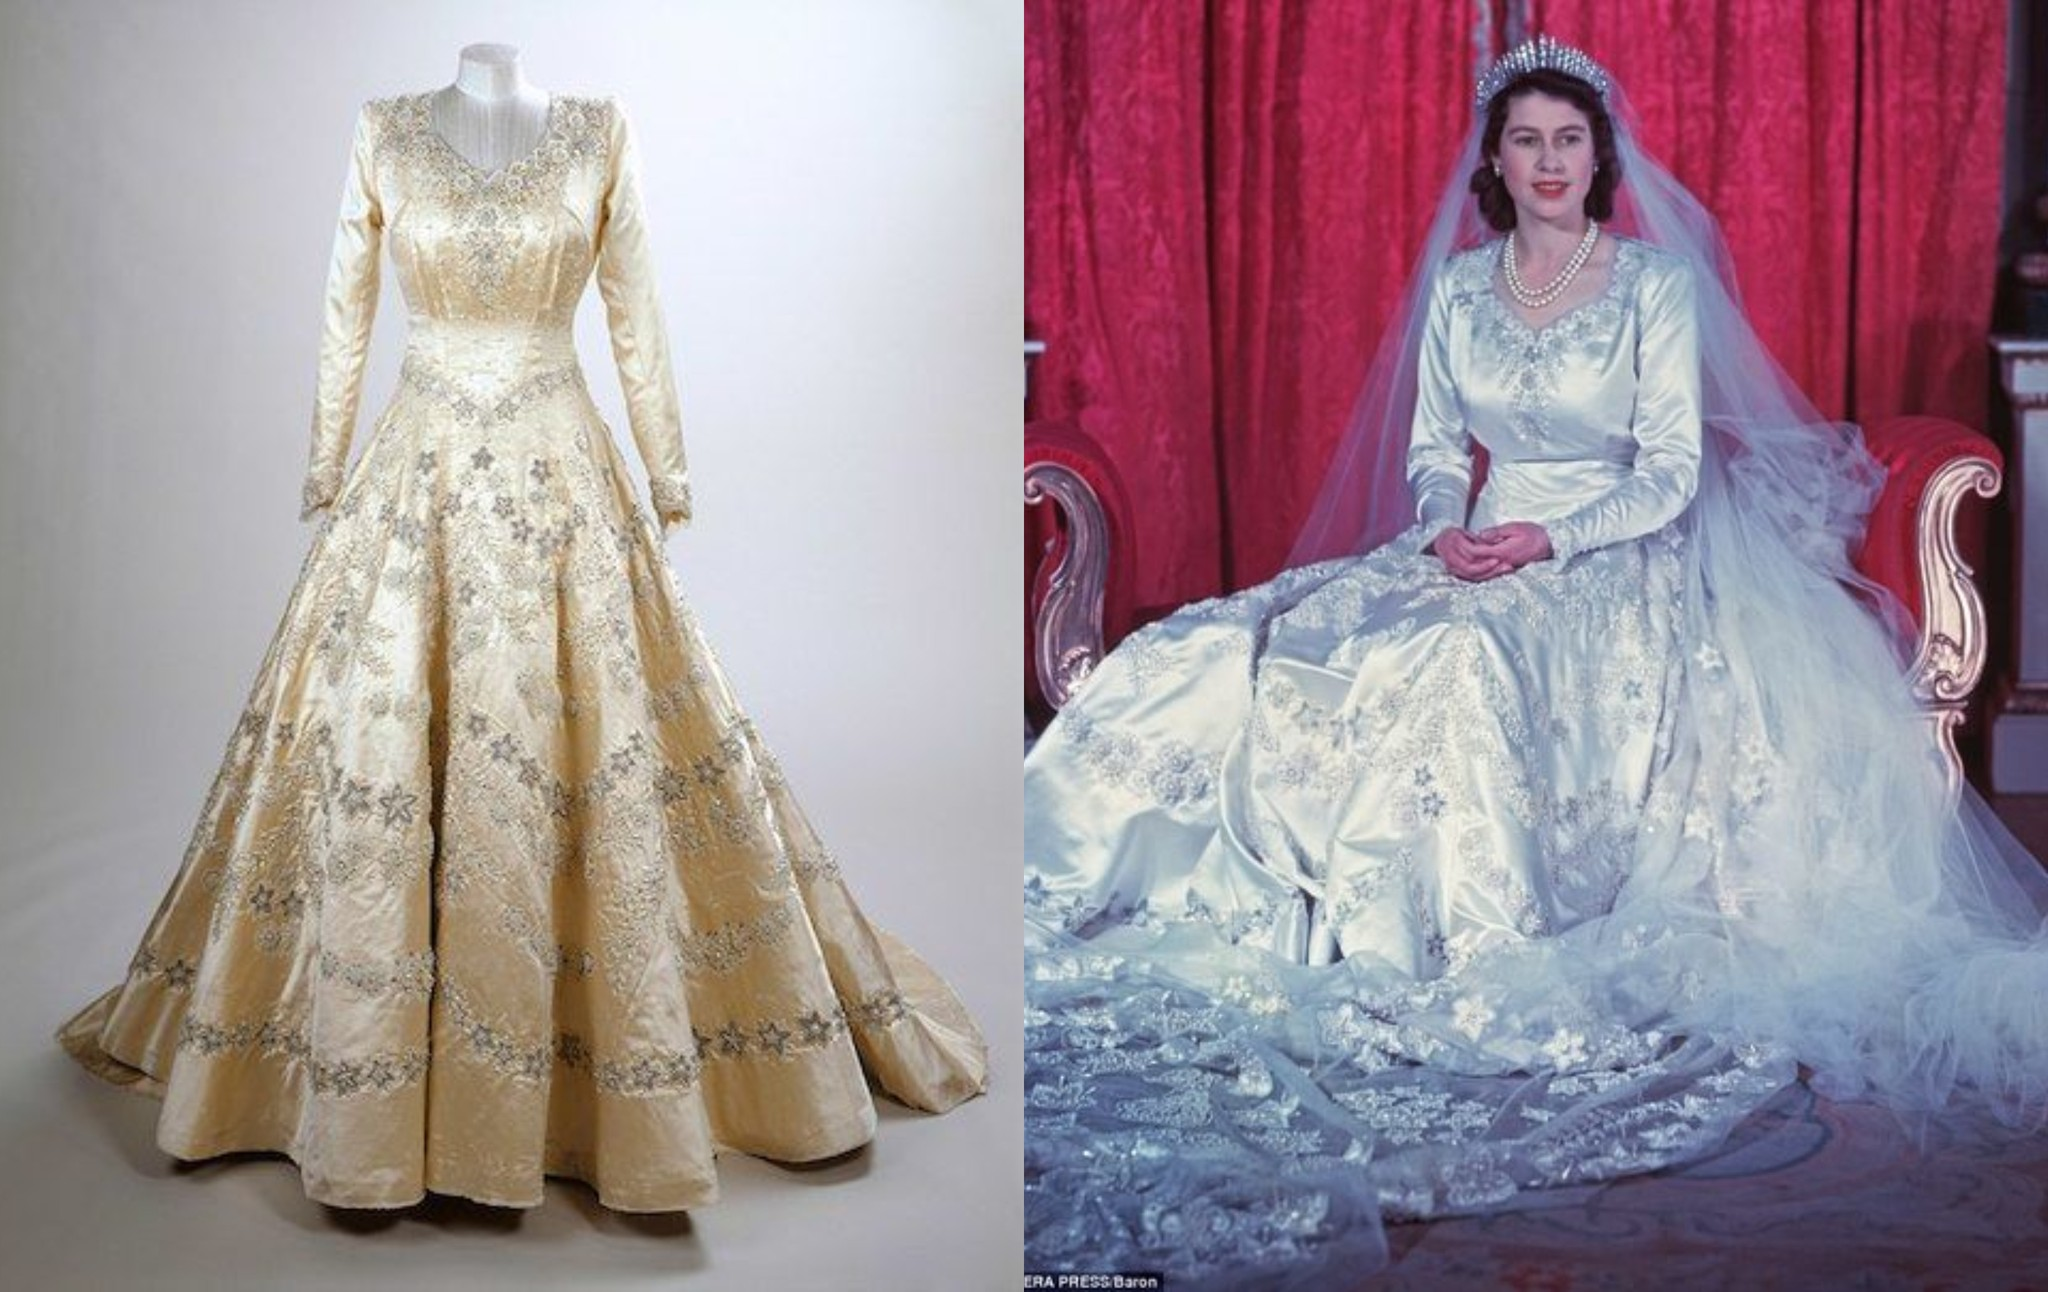   Nữ hoàng Elizabeth II trong lễ cưới với Hoàng tế Philip vào ngày 20/11/1947. Chiếc váy cưới  ...